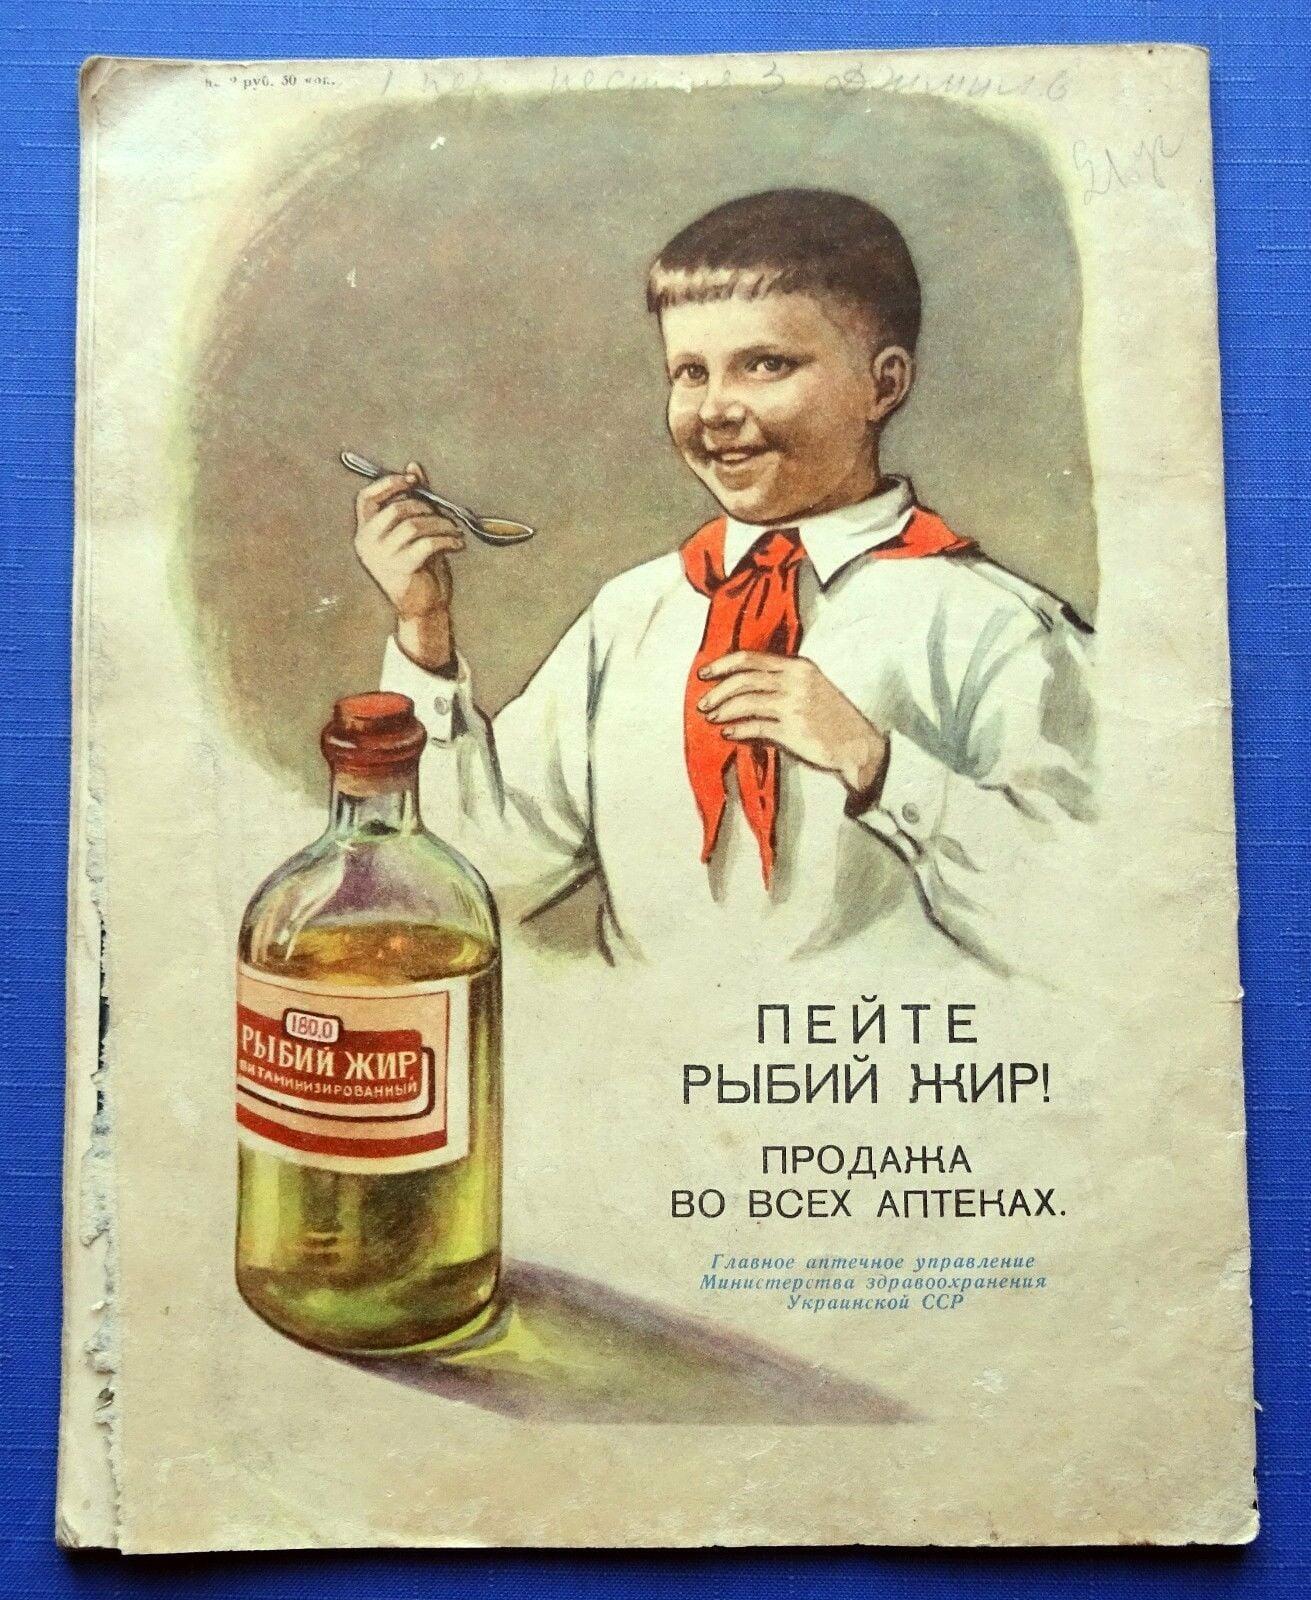 Е буду пить. Старые плакаты. Старые рекламные плакаты. Плакаты советского времени. Агитационные плакаты.